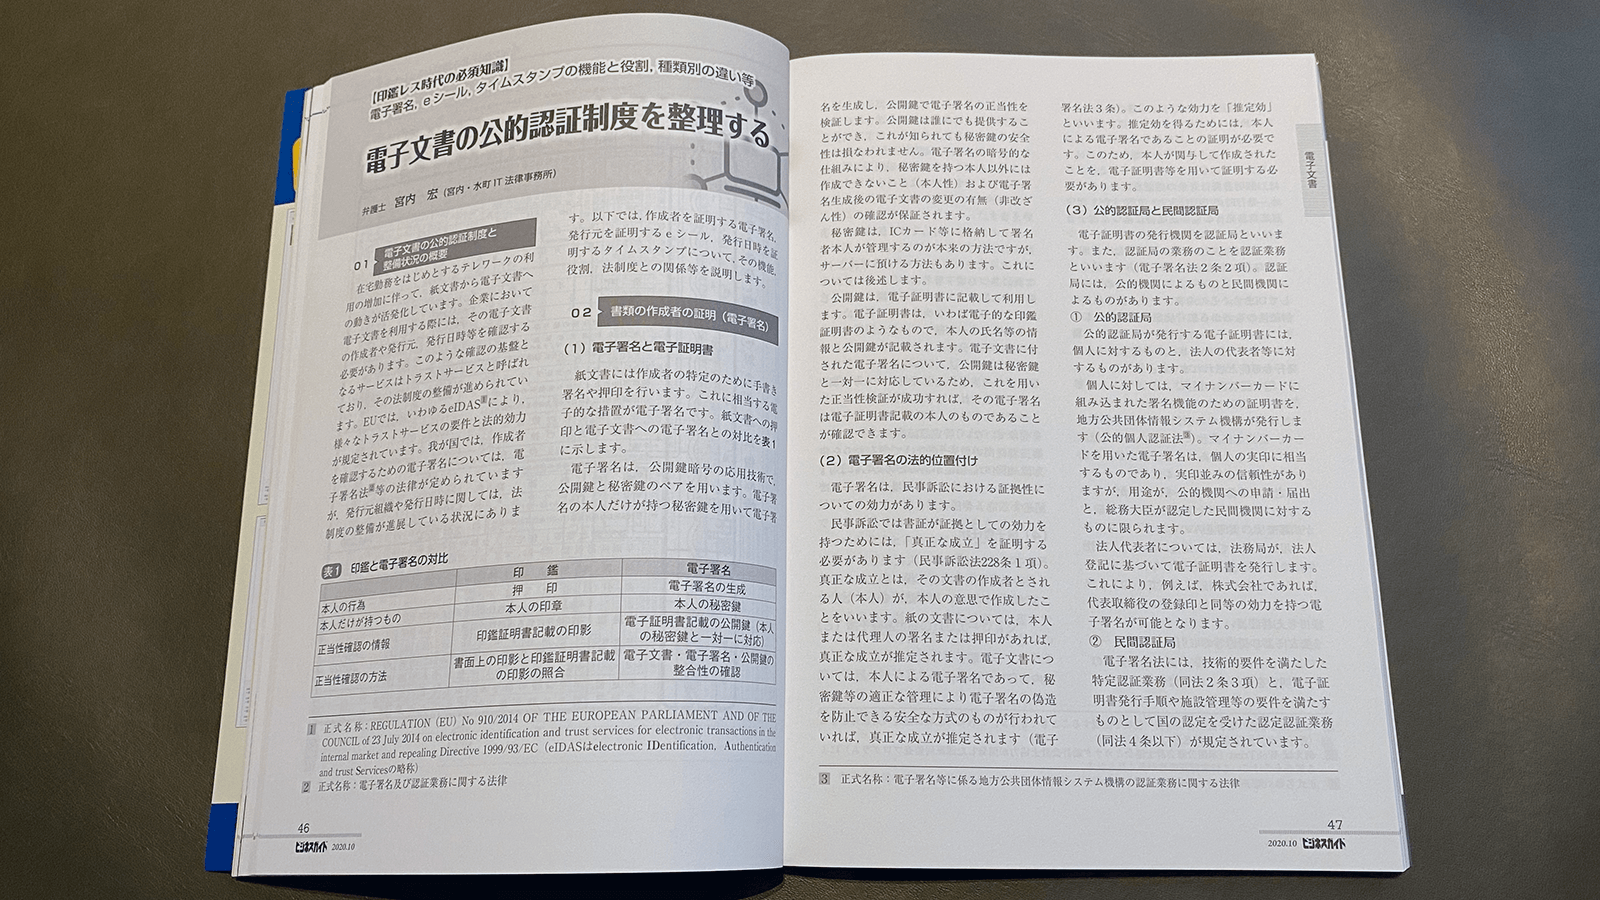 宮内宏「電子文書の公的認証制度を整理する」（ビジネスガイド2020年10月号P46）